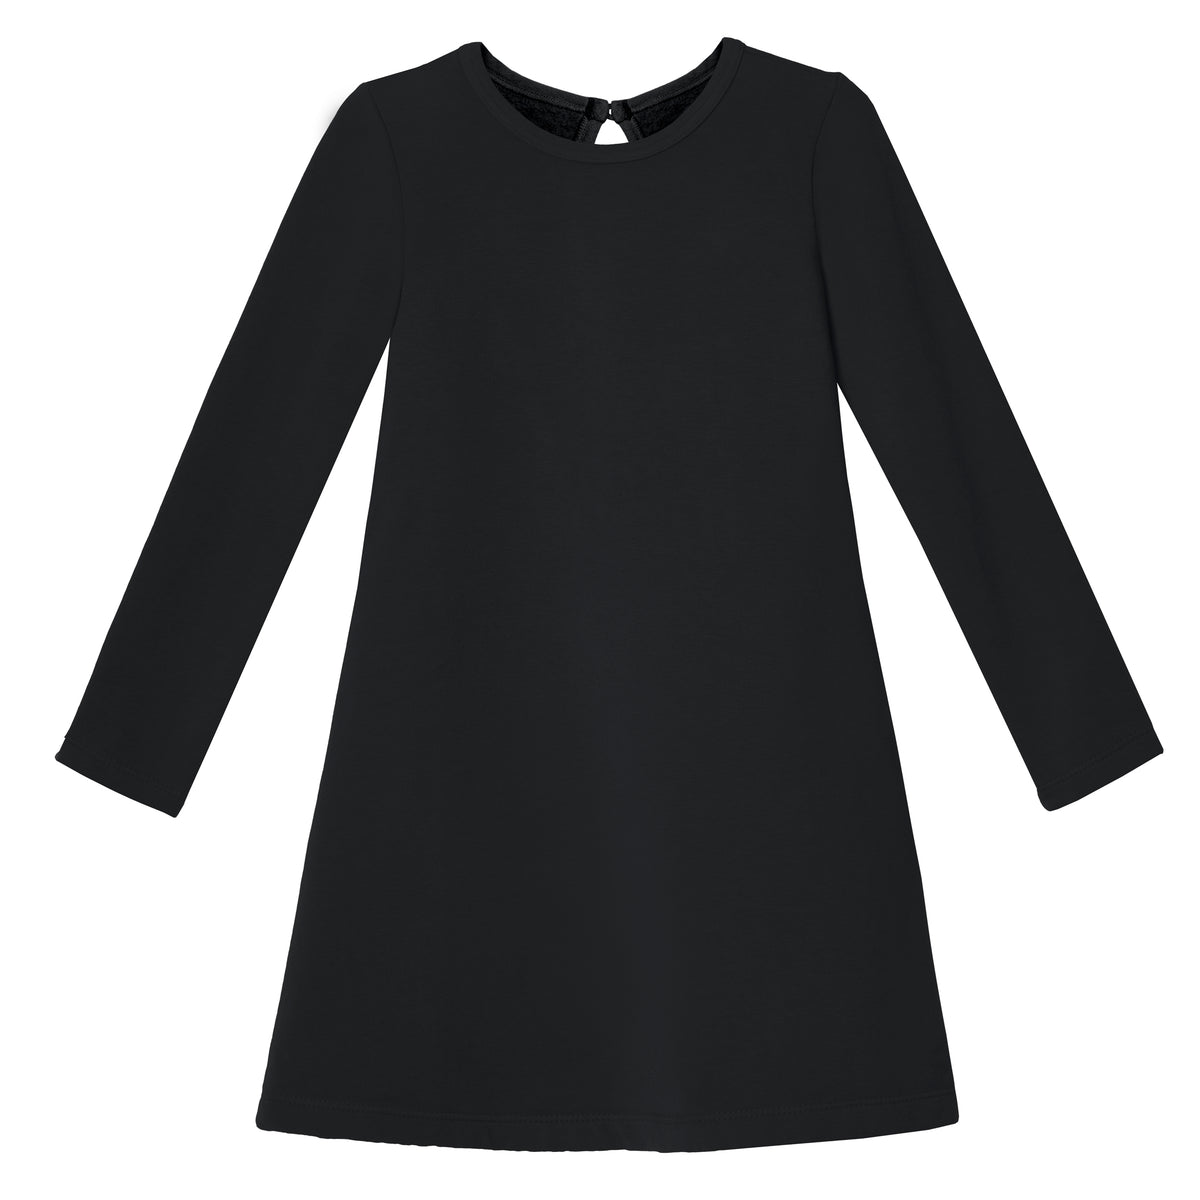 Girls Lightweight Soft Cotton Fleece A-Line Dress| Black